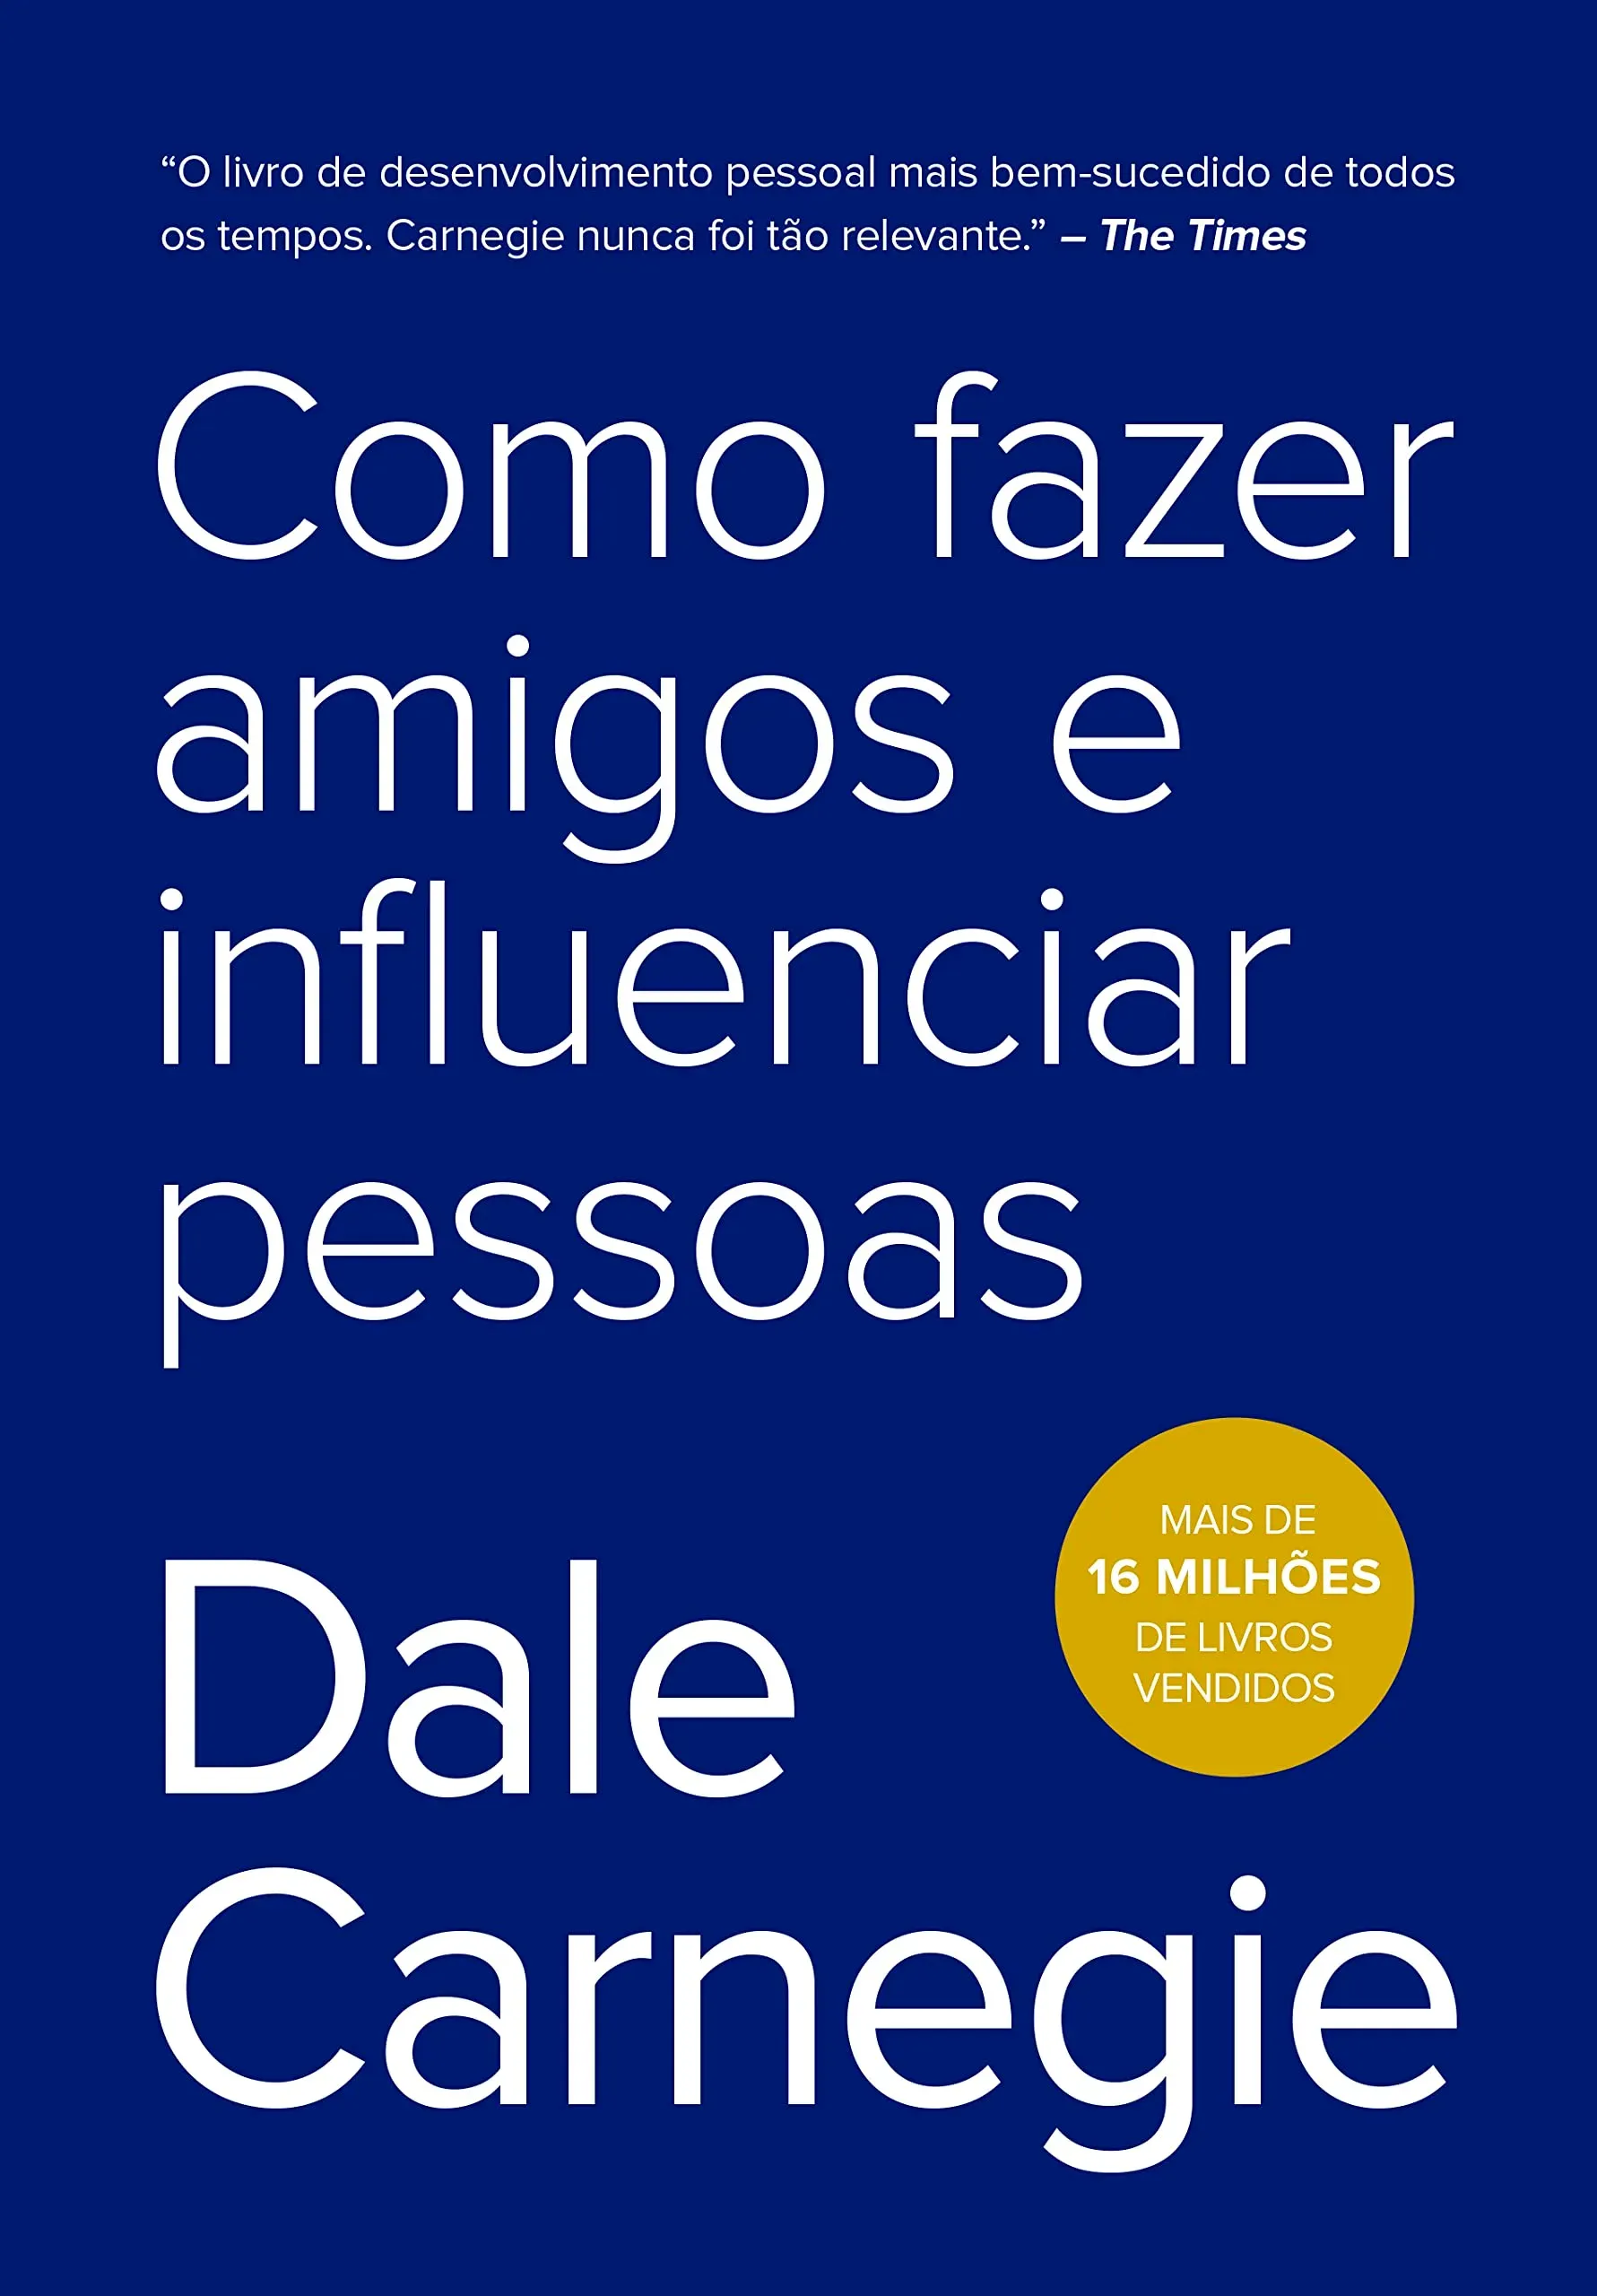 "Como fazer amigos e influenciar pessoas" de Dale Carnegie